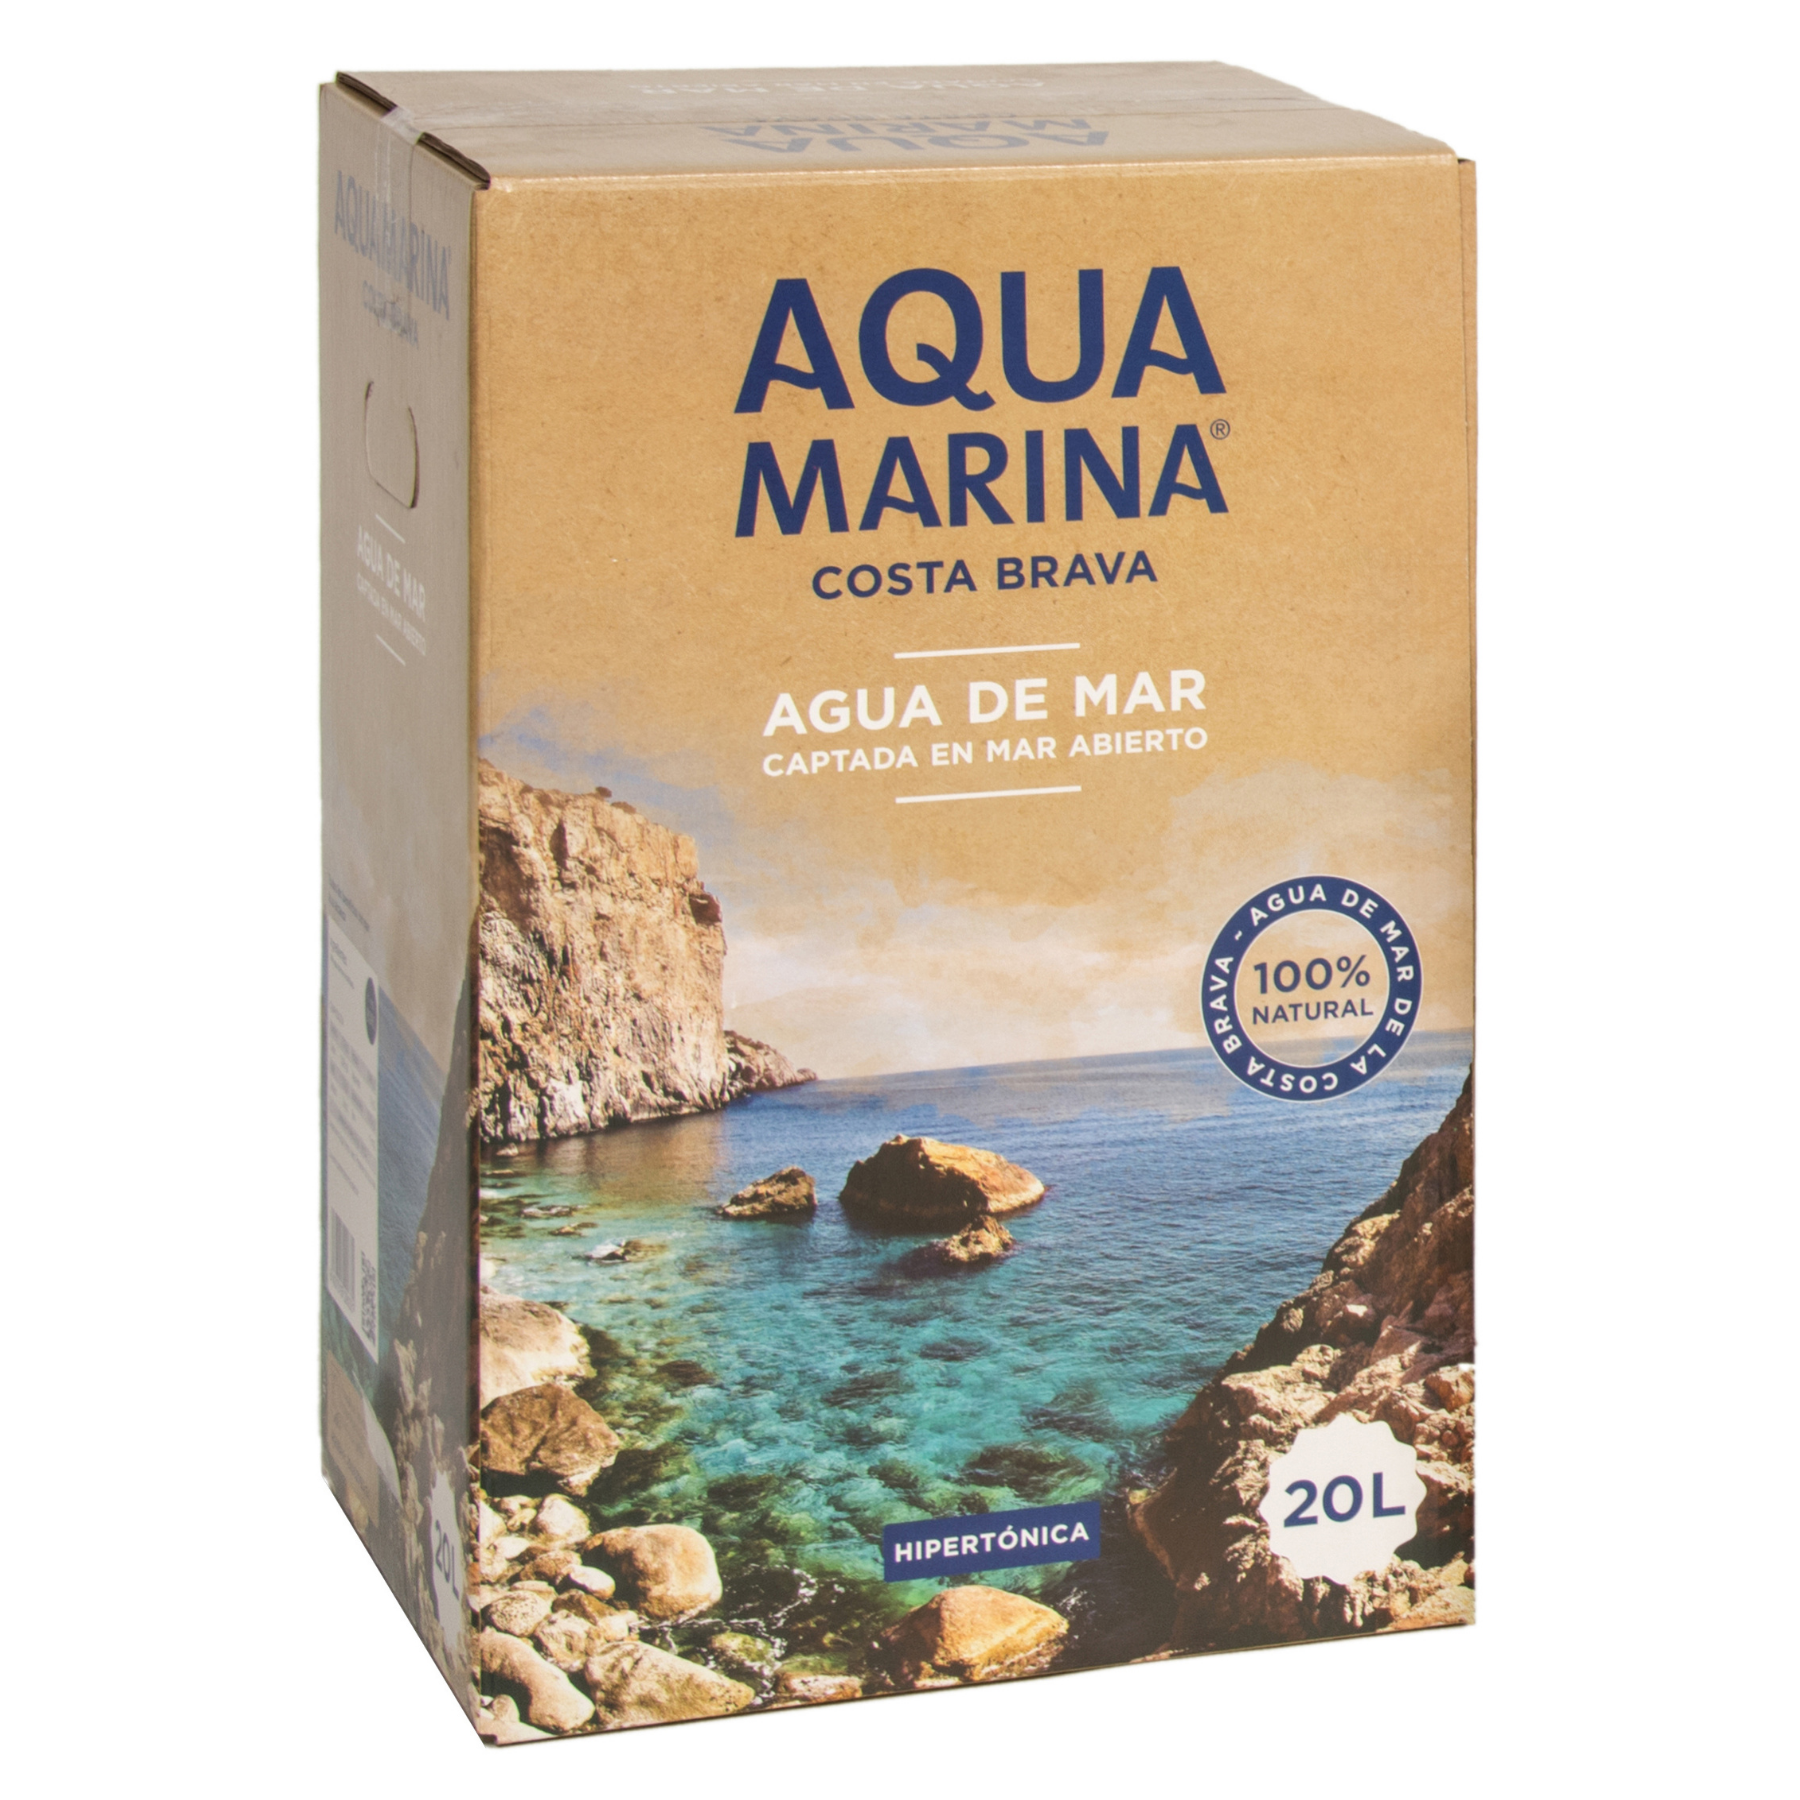 AQUAMARINA Costa Brava. Agua marina Hipertónica 20 Litros Bag In Box. Microfiltrada y sin aditivos. Contiene más de 75 minerales y oligoelementos.